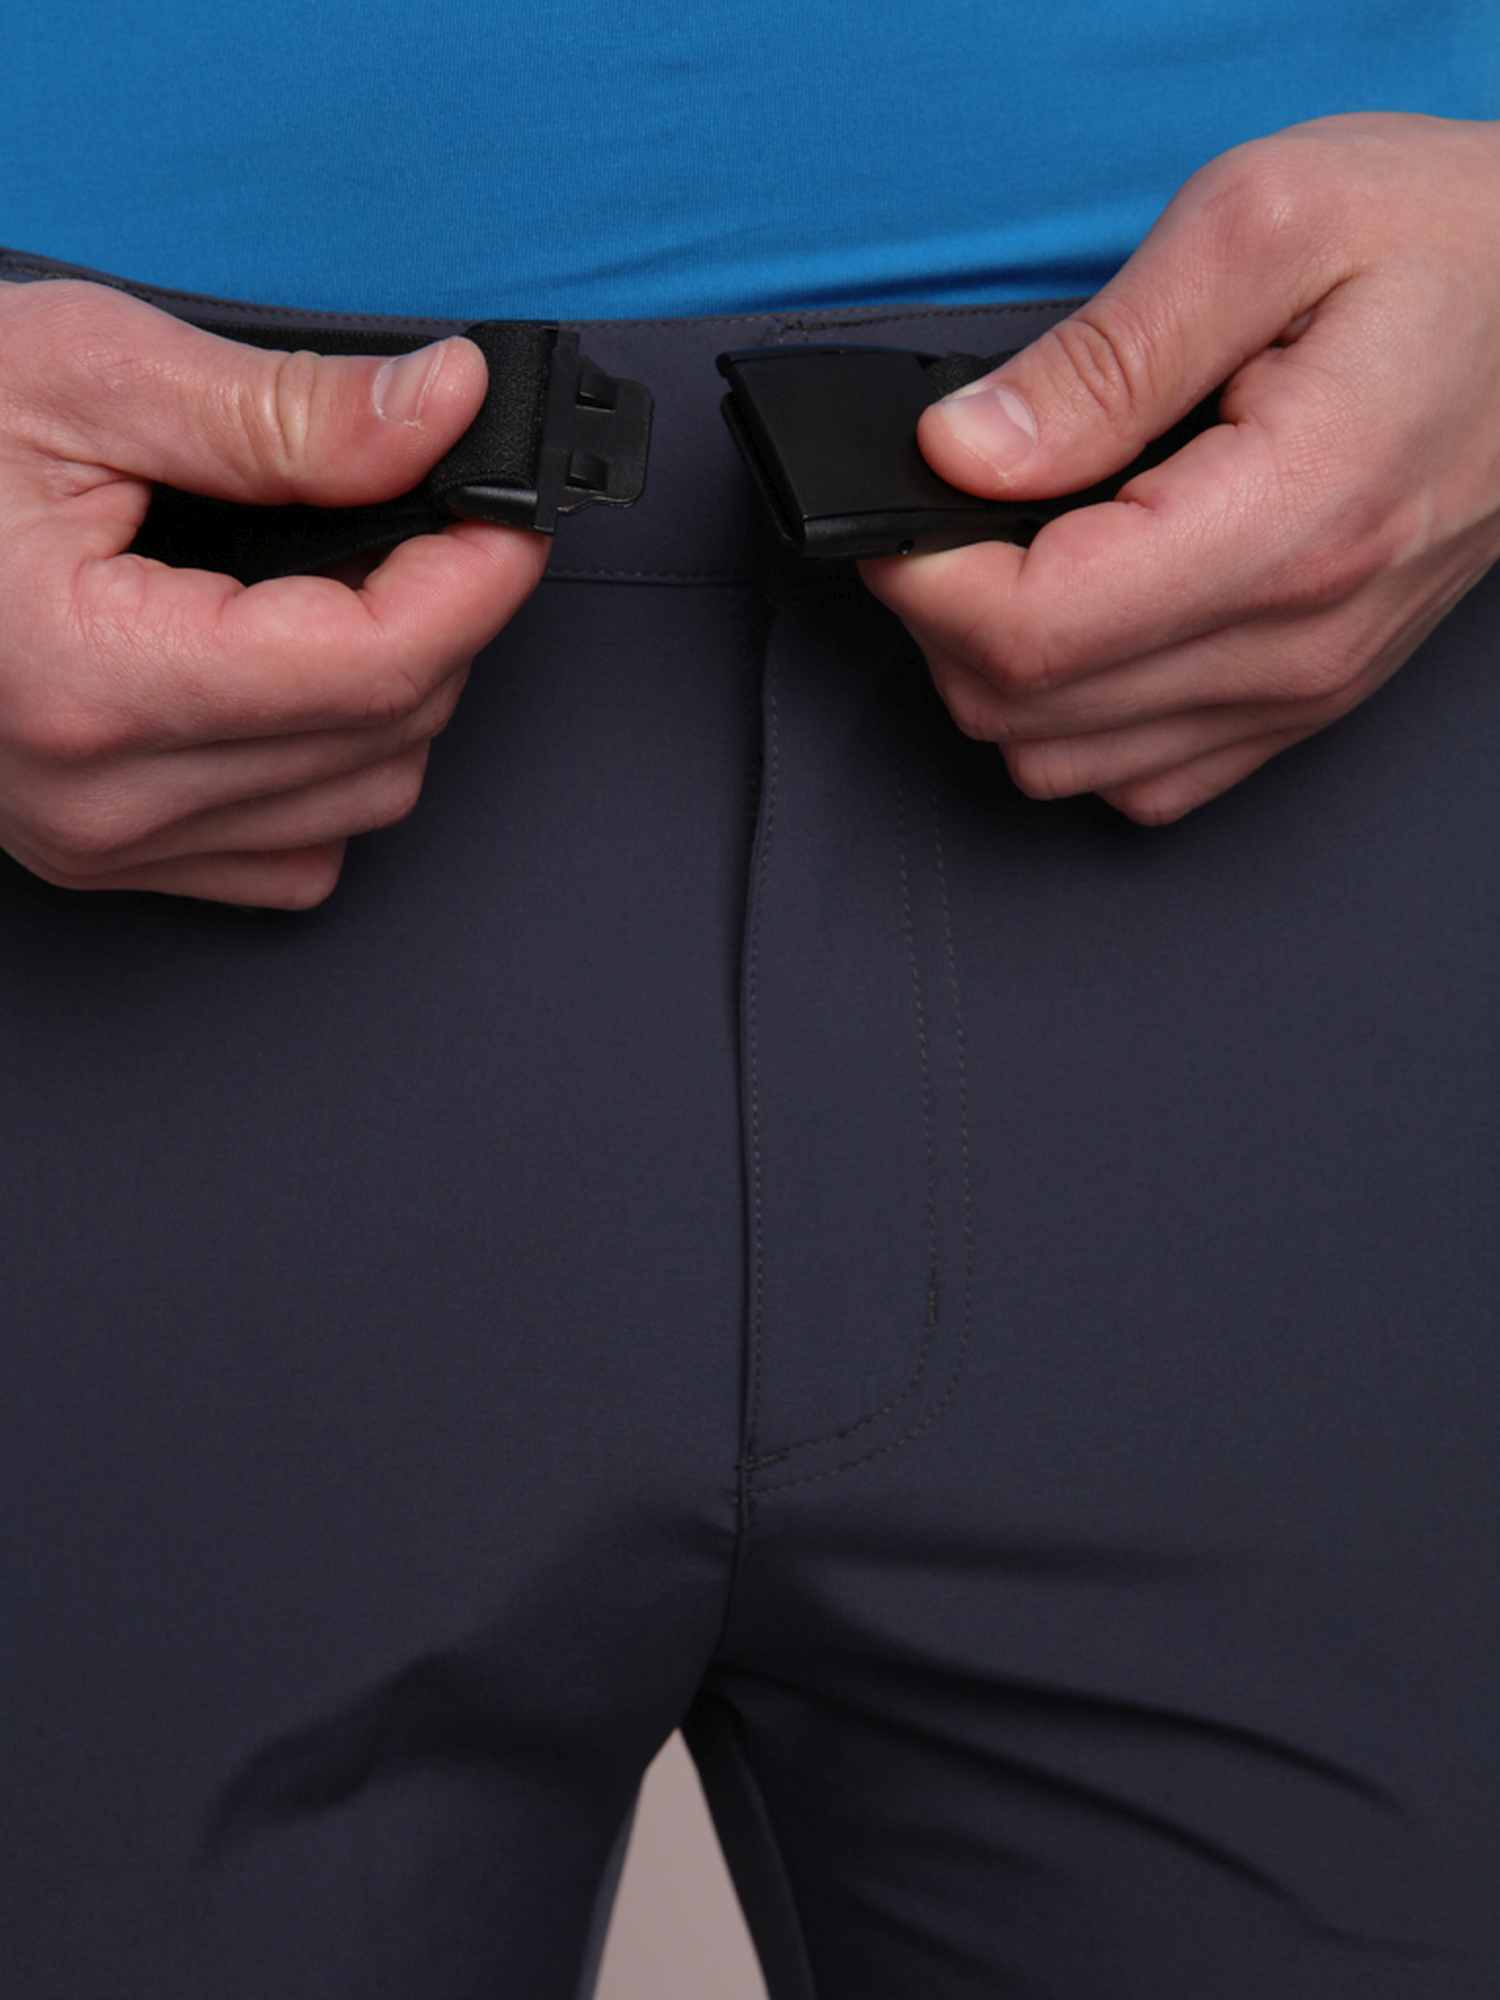 Мъжки къси панталони